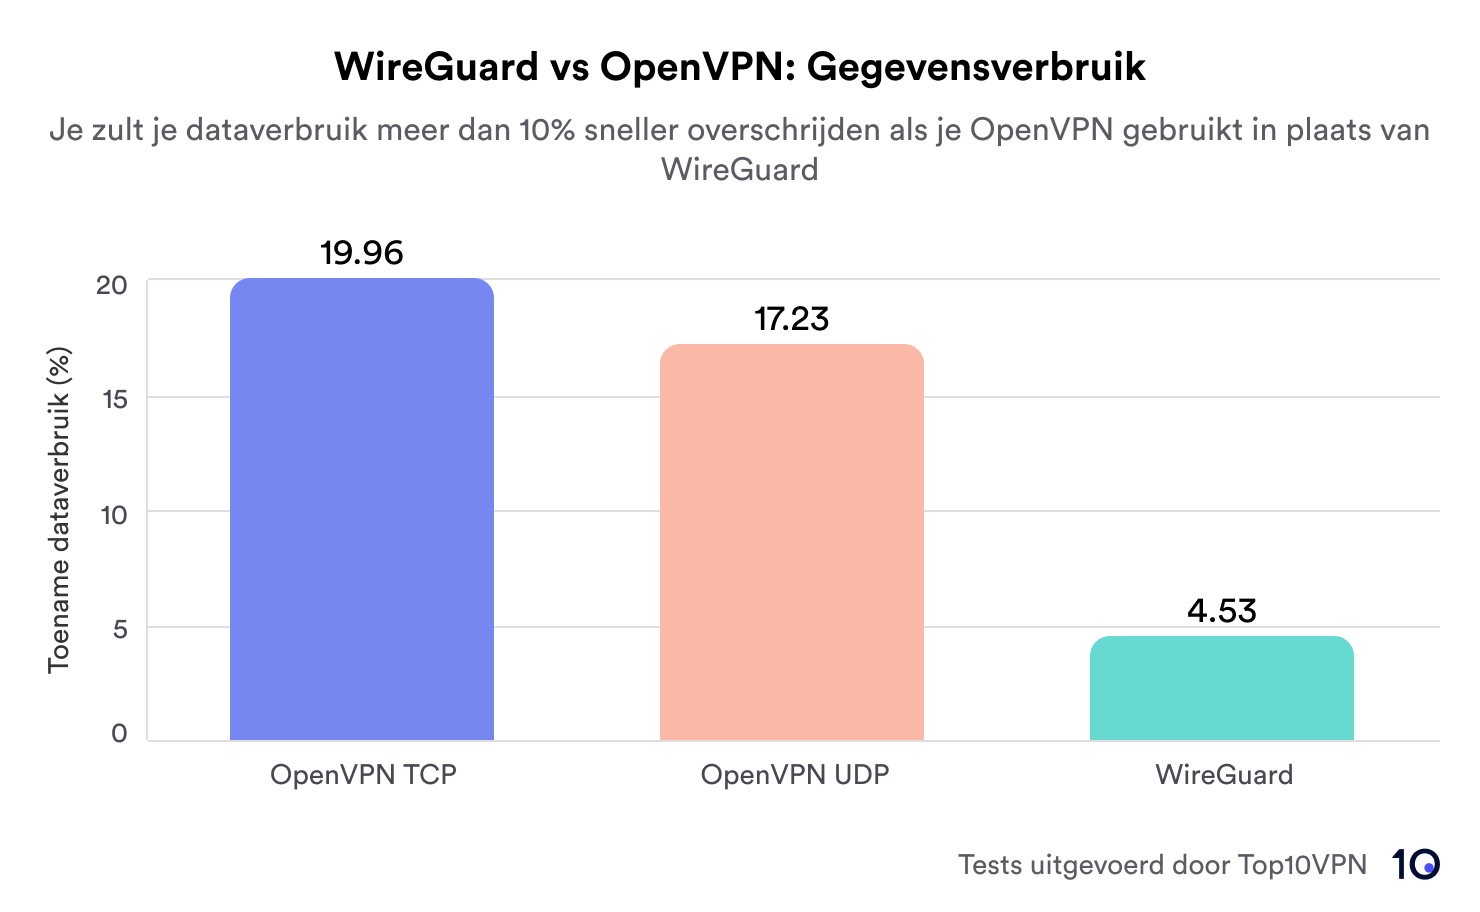 staafdiagram met het dataverbruik van OpenVPN TCP, OpenVPN UDP en WireGuard